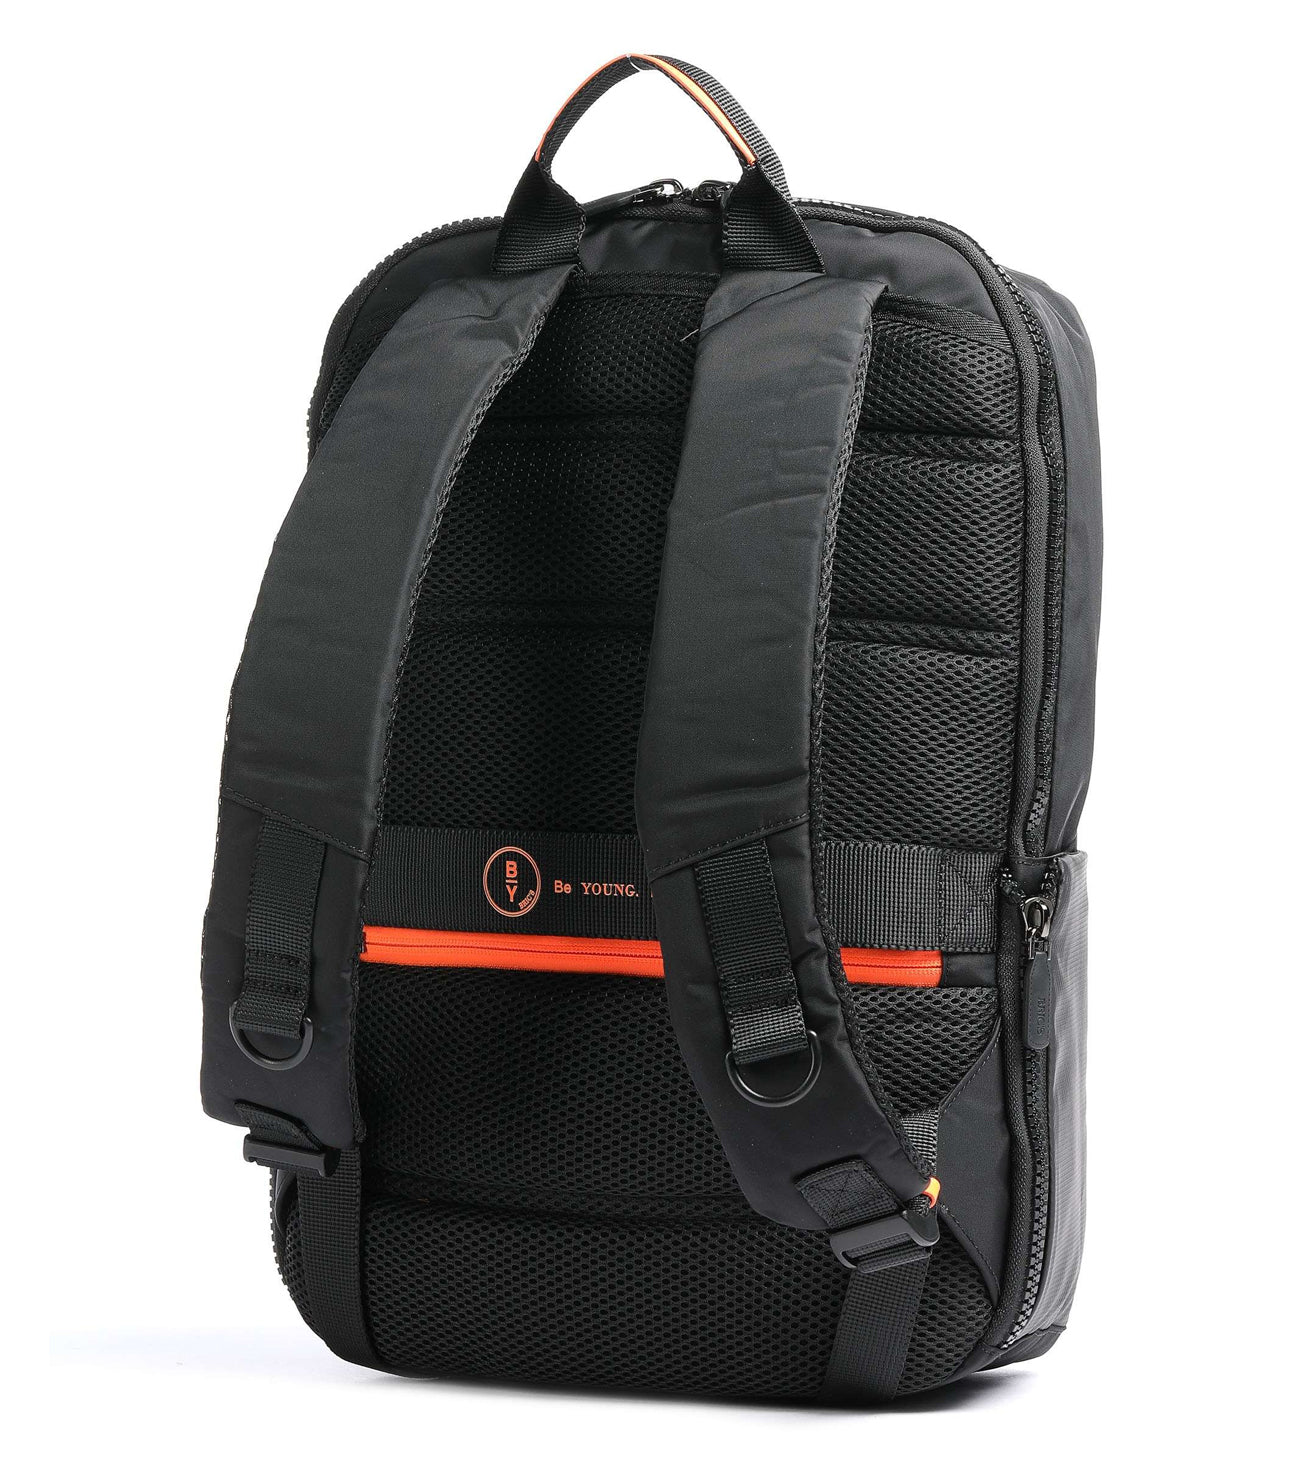 Bric's B|Y Unisex Black Backpack